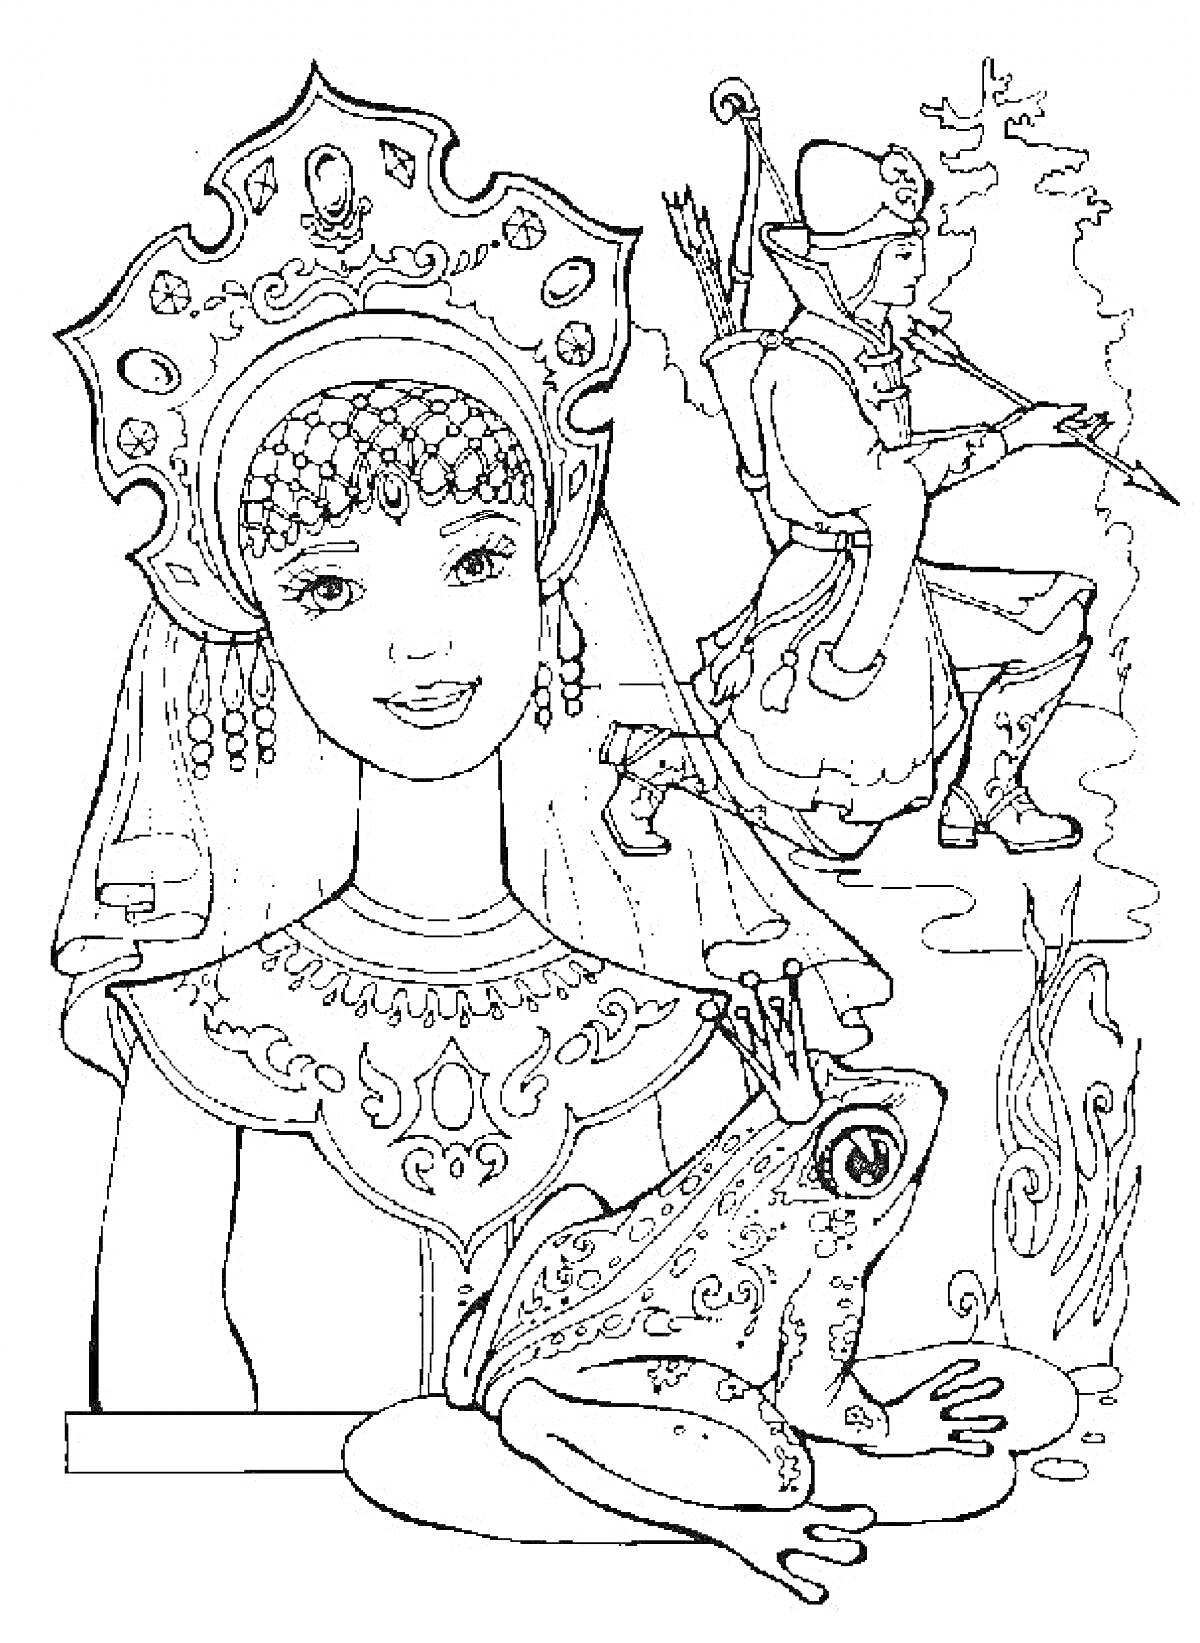 Раскраска Царевна в кокошнике с коронованной лягушкой на руке и стрельцом на заднем плане